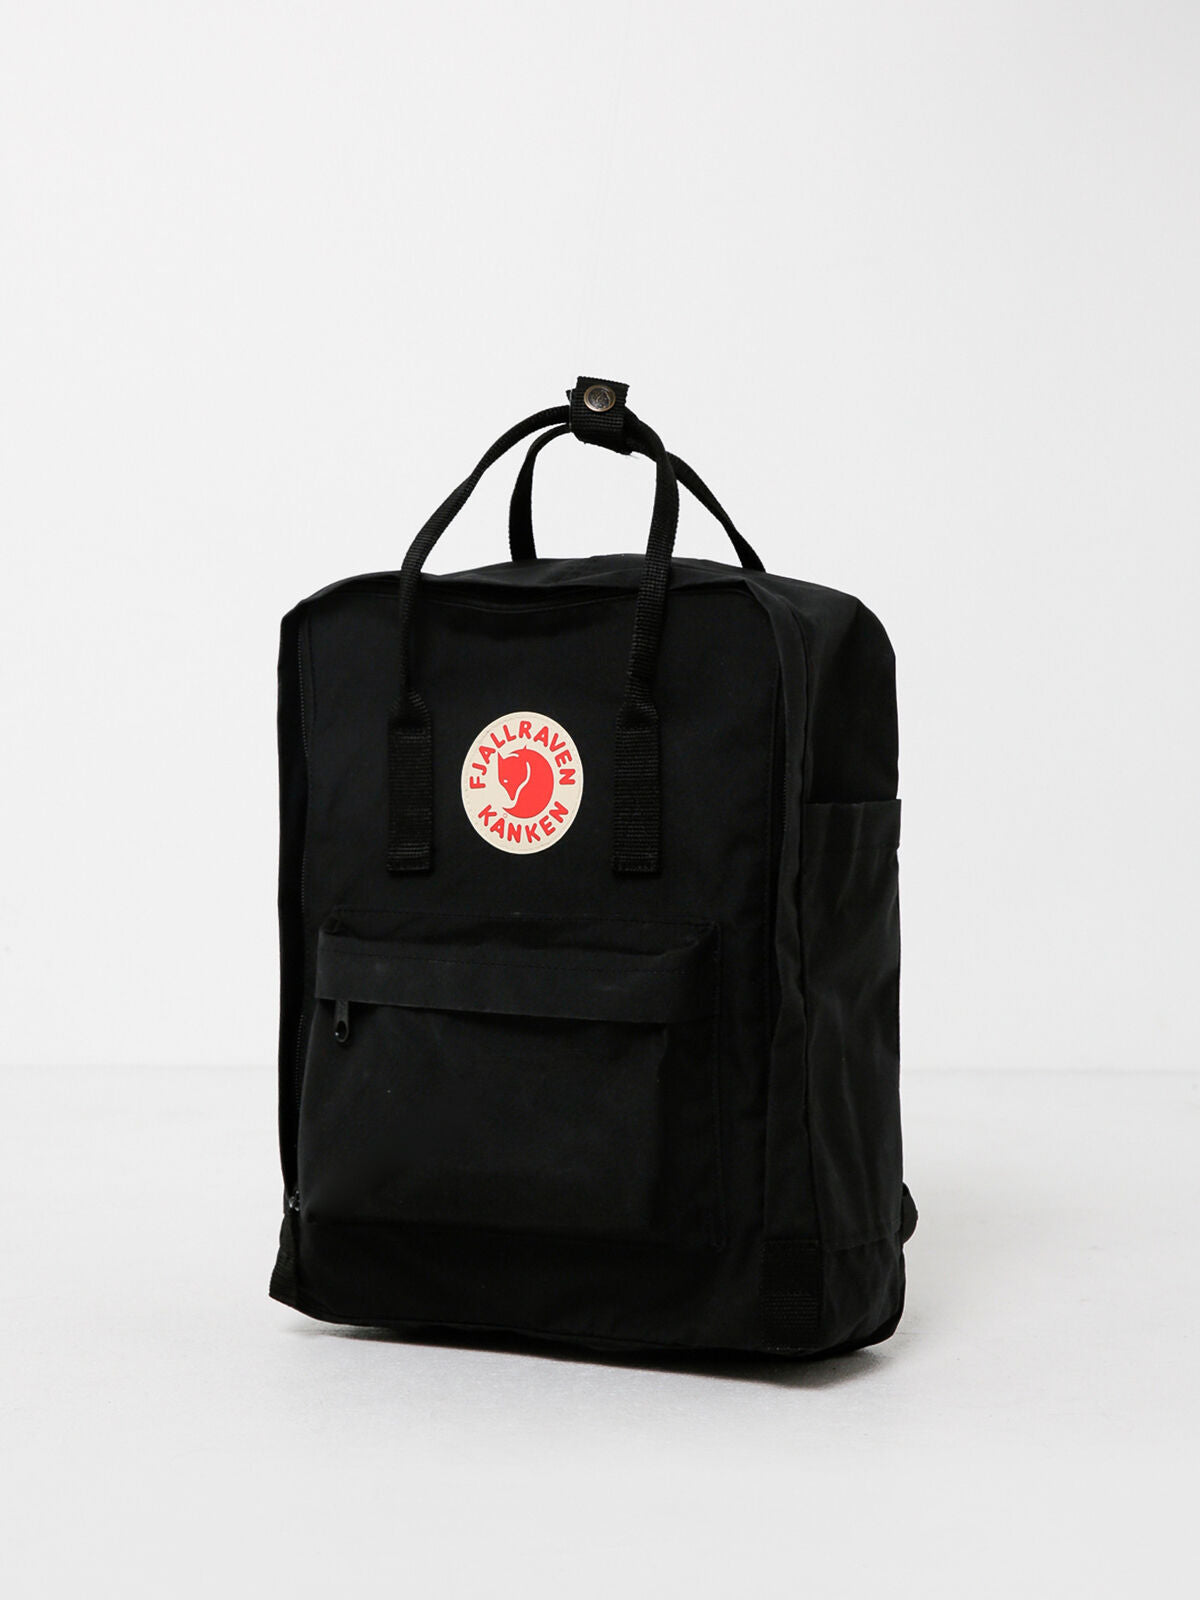 Kanken Backpack in Black